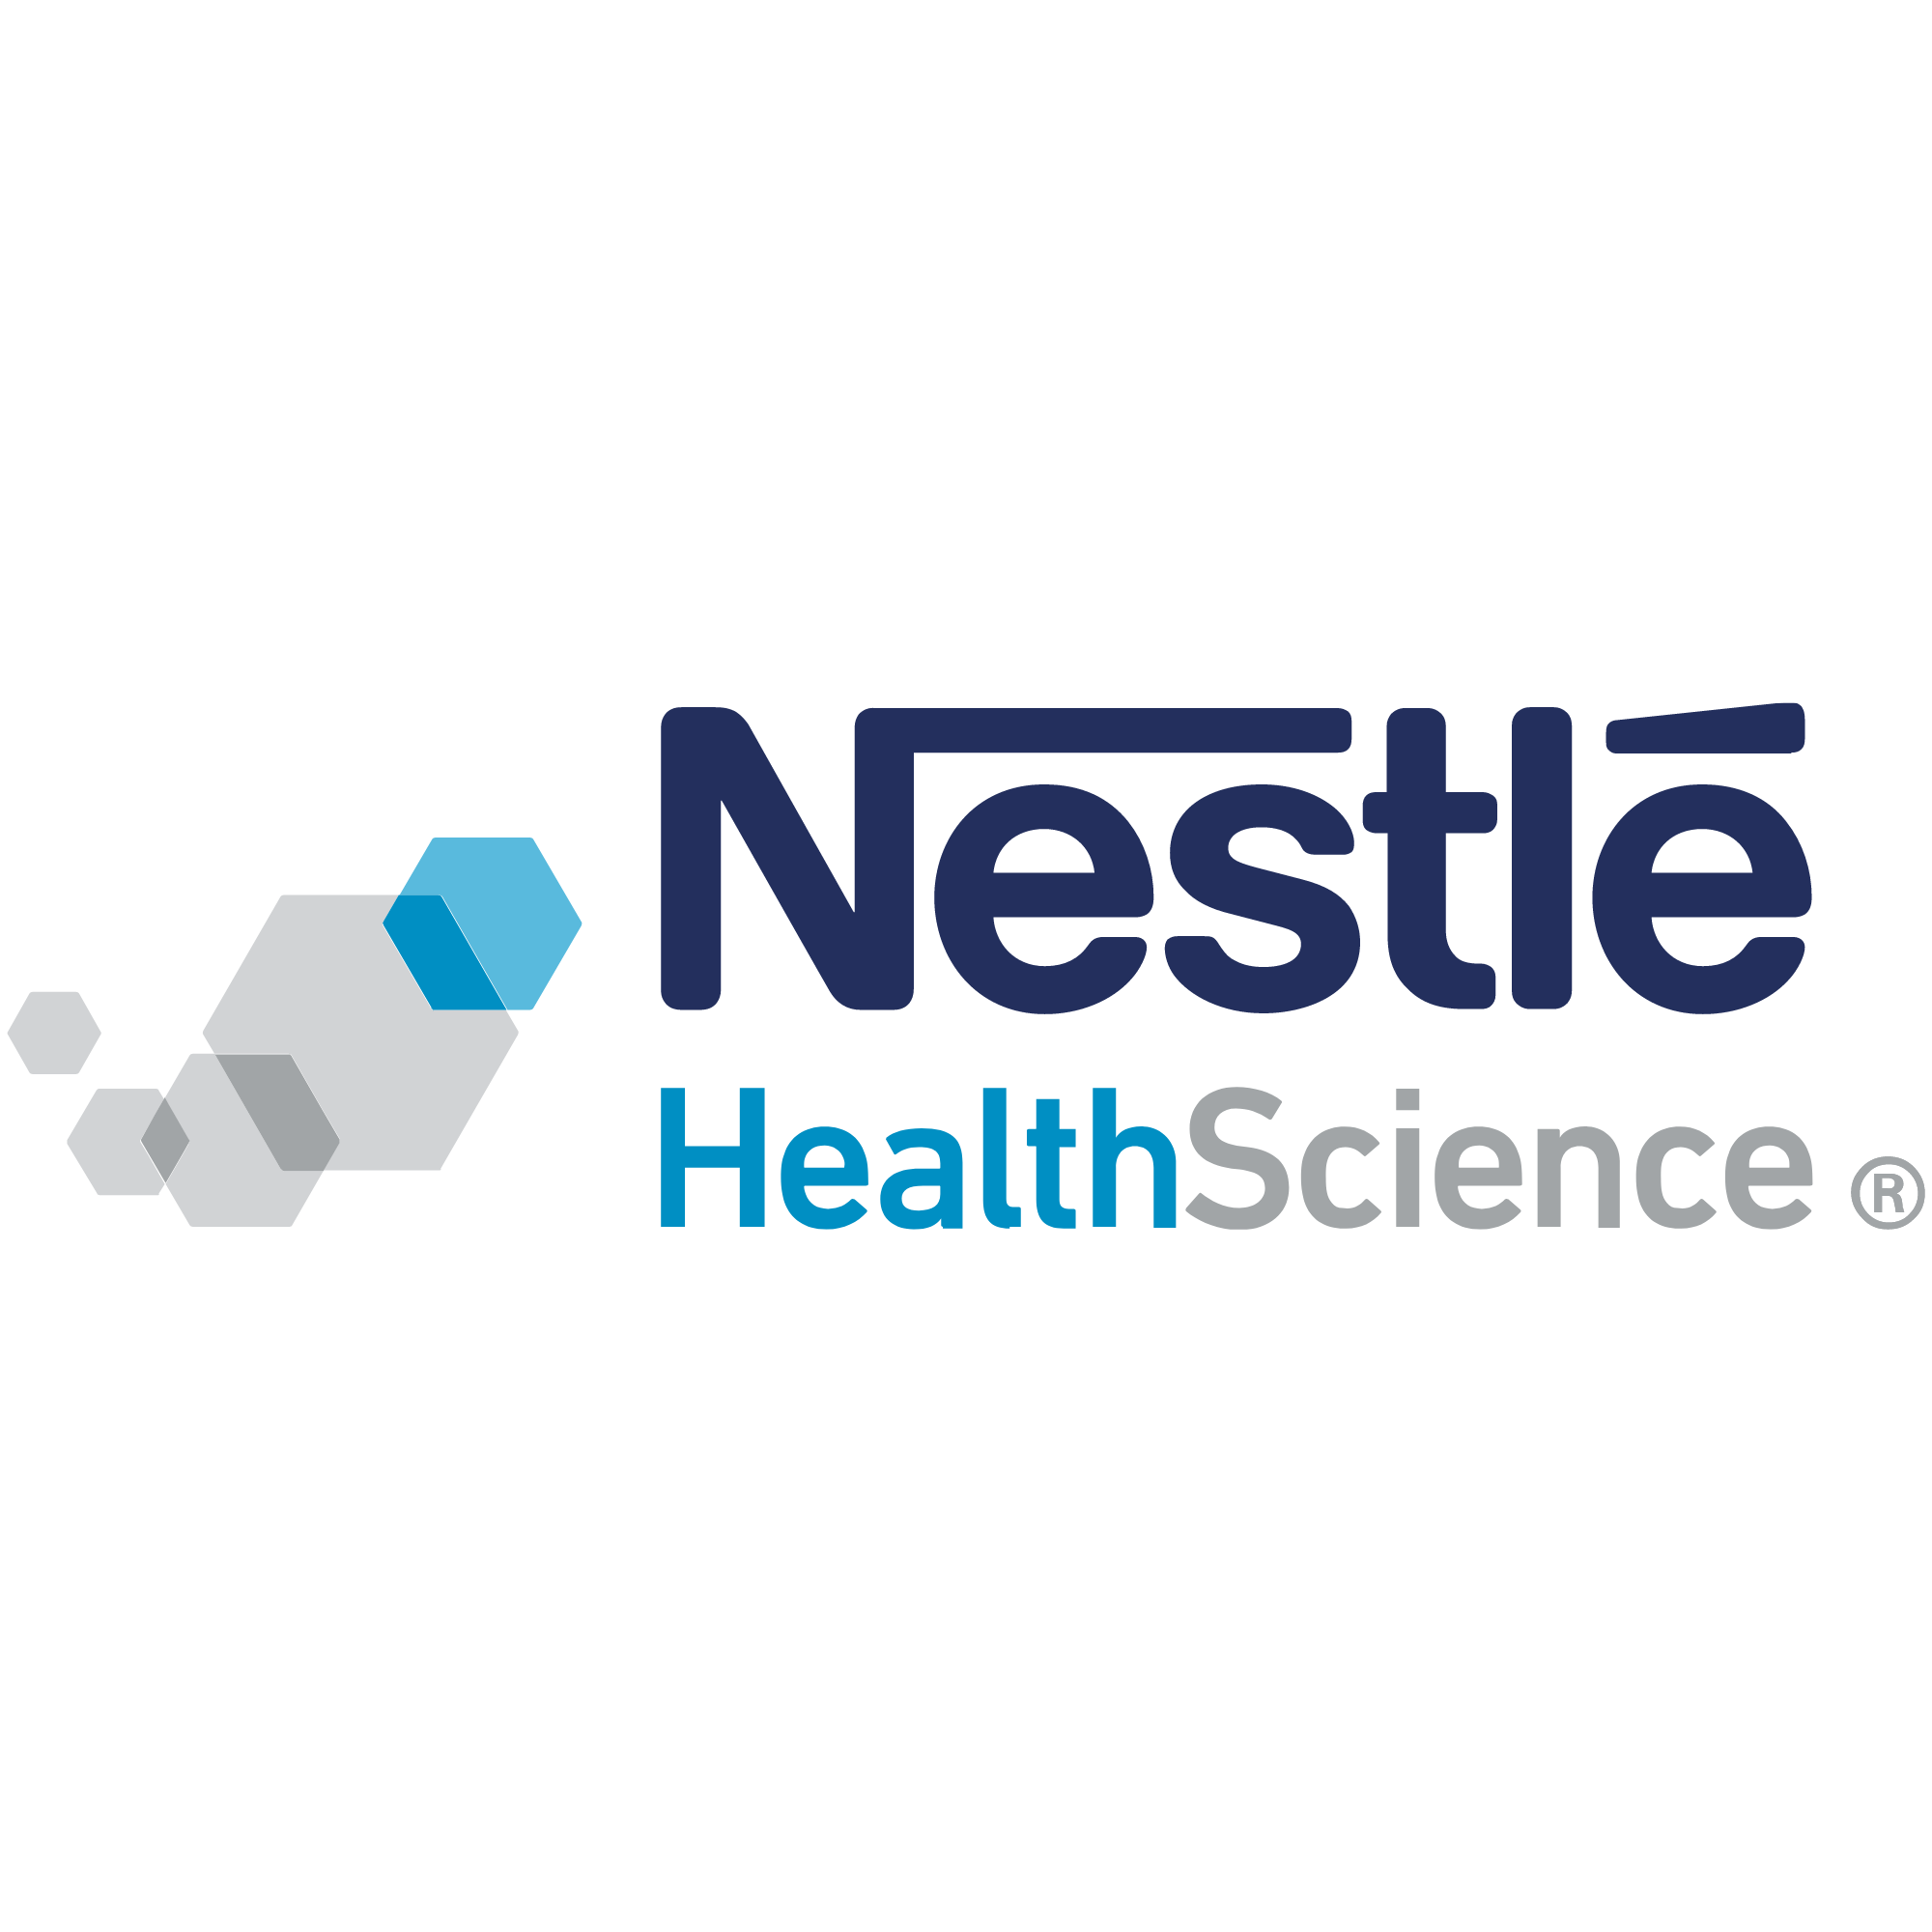 NutriKal está comprometida en mejorar la vida de nuestros clientes a través de suplementos nutricionales de alta calidad respaldados por la investigación y el asesoramiento de expertos como es la marca Nestlé.